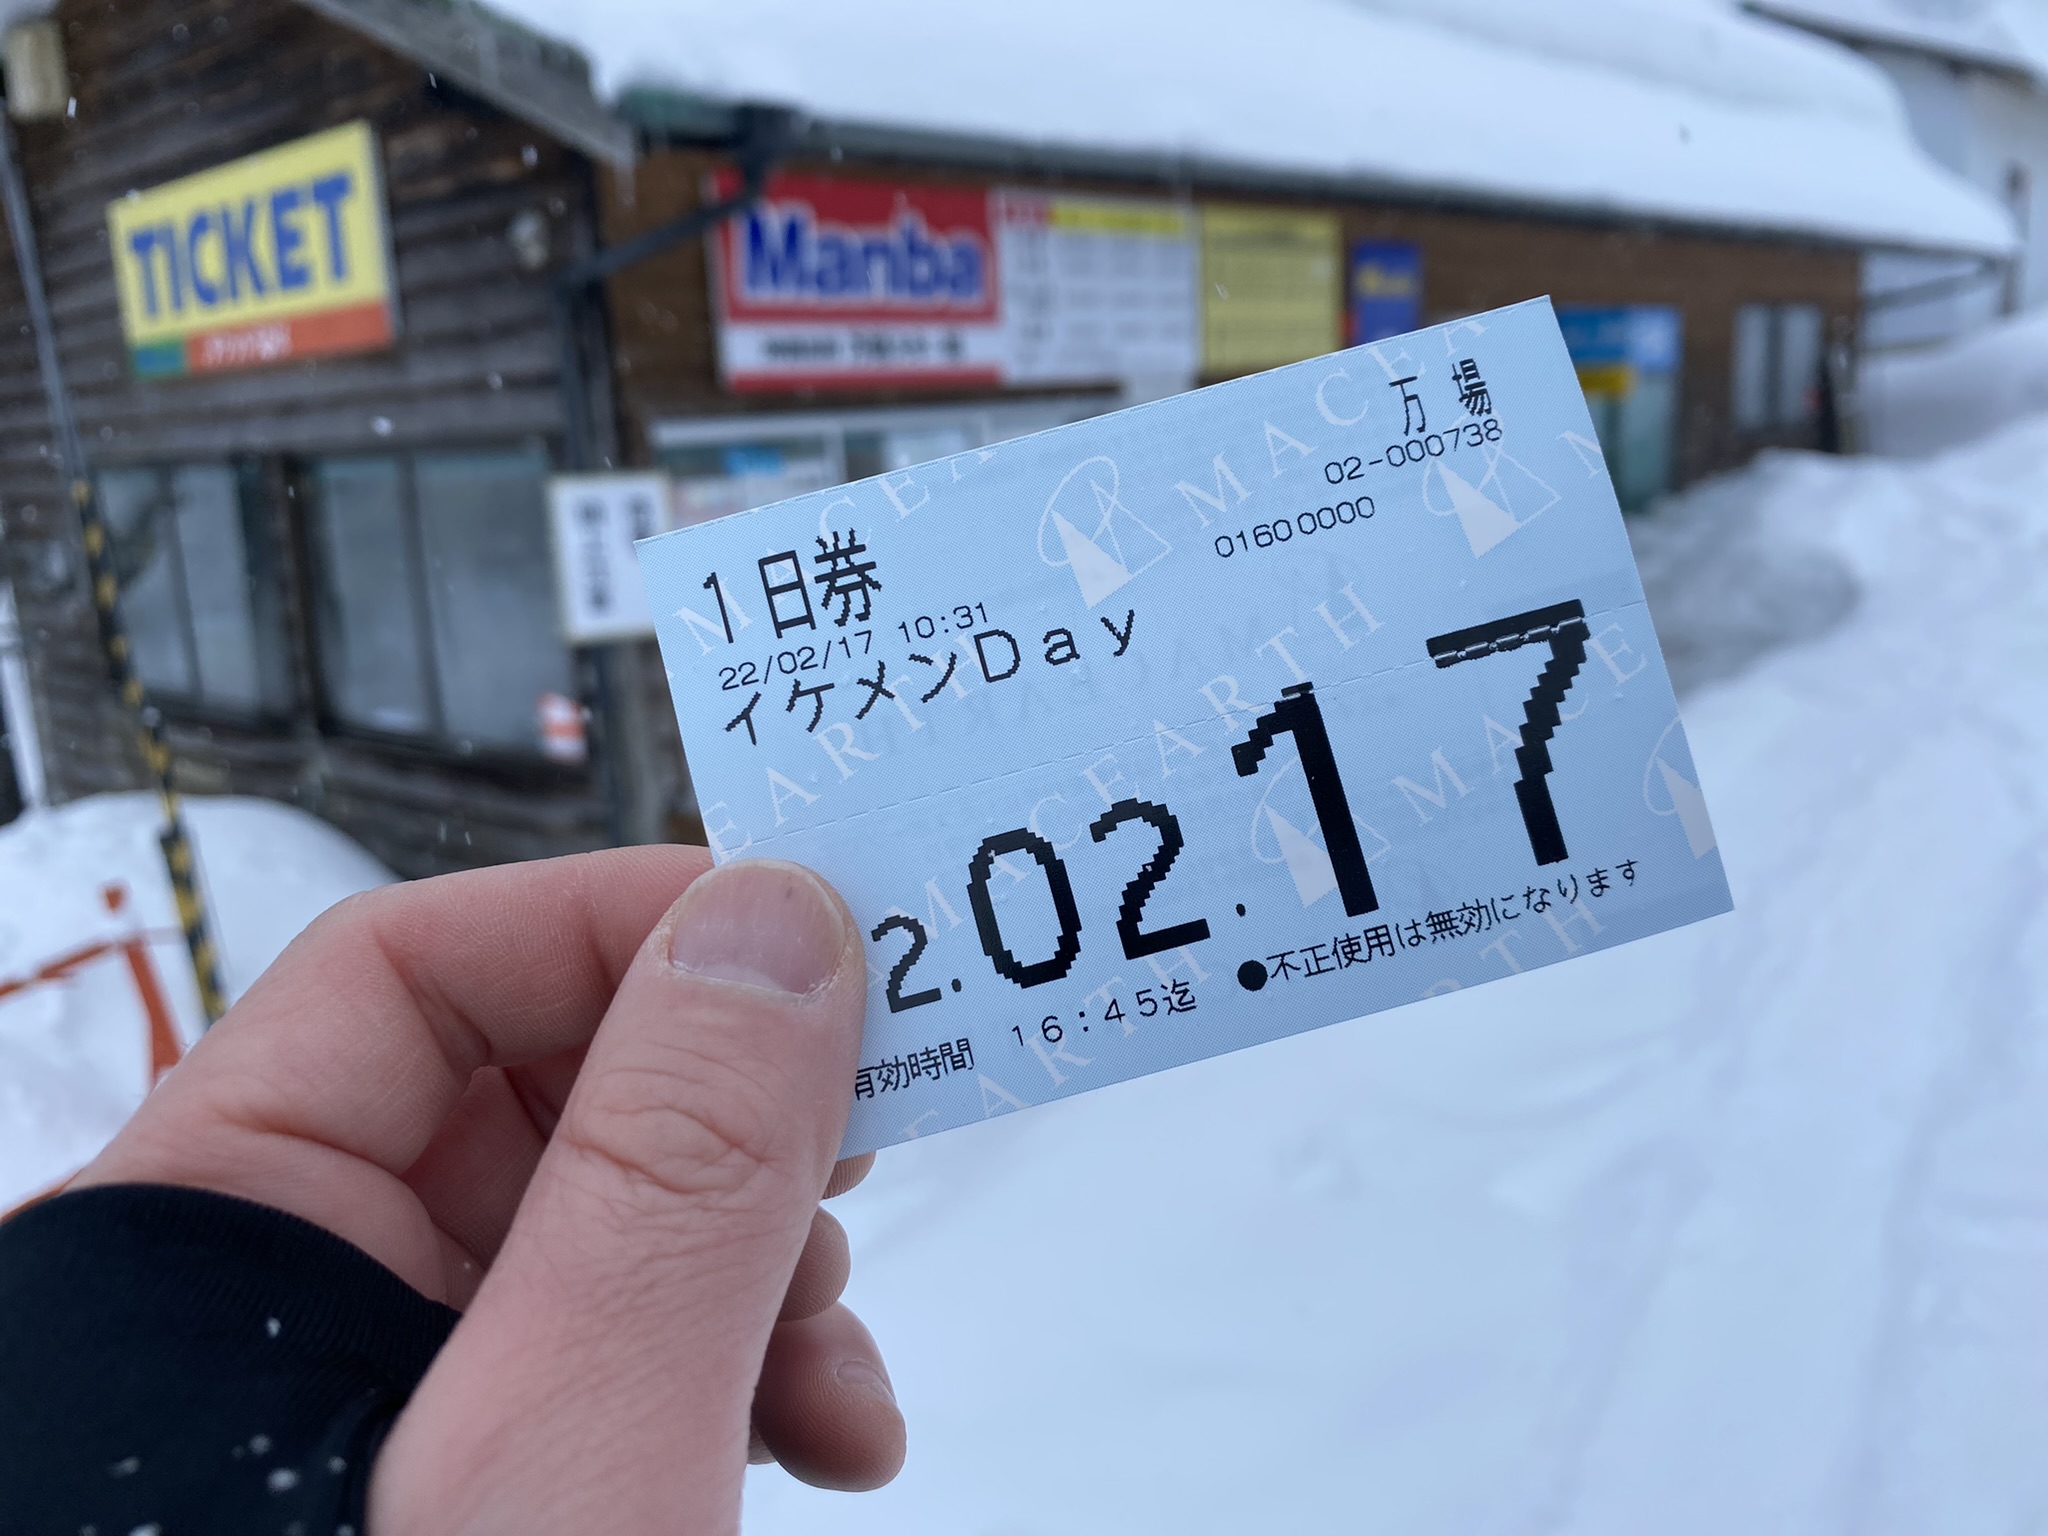 奥神鍋リフト1日券【全日用2枚】スキー場